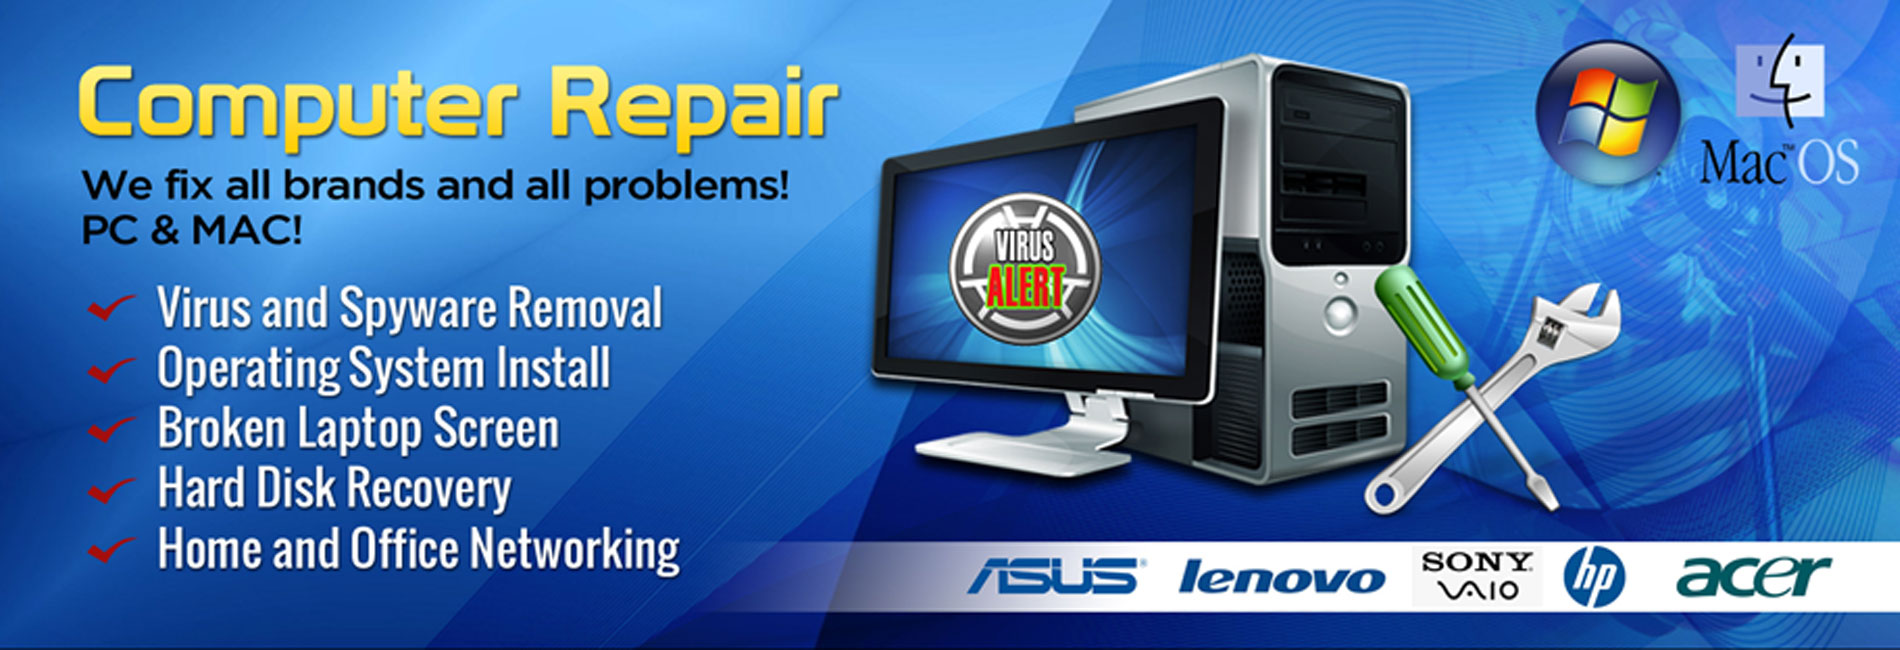 PC Repair Services |Cheap Computer Repairs | PC Fix Near Me 516-360-0757 - TechsonDuty